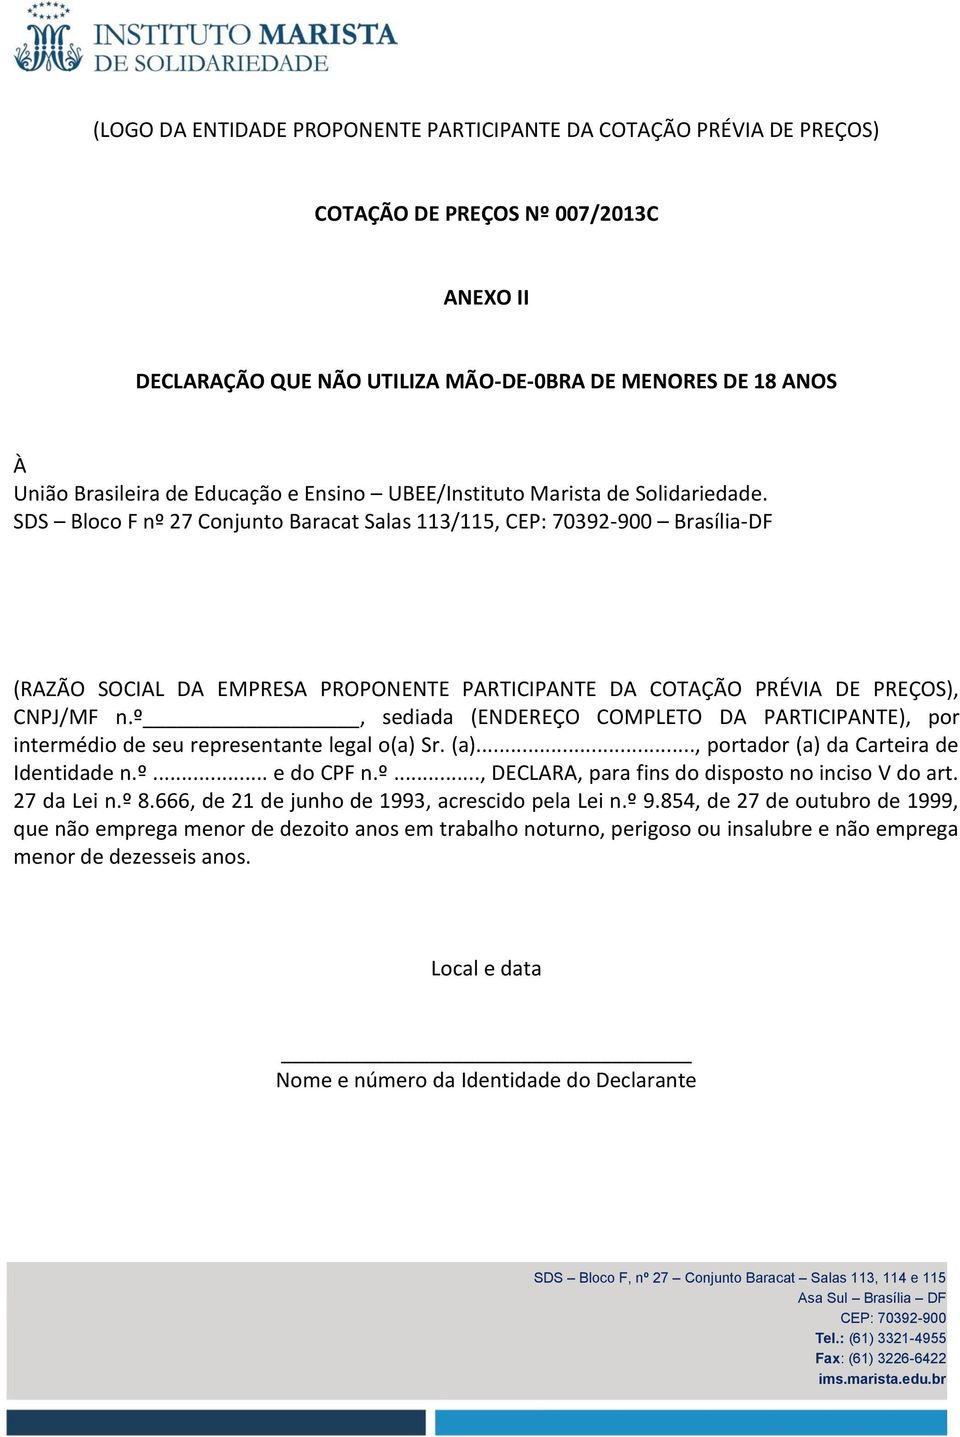 SDS Bloco F nº 27 Conjunto Baracat Salas 113/115, Brasília-DF (RAZÃO SOCIAL DA EMPRESA PROPONENTE PARTICIPANTE DA COTAÇÃO PRÉVIA DE PREÇOS), CNPJ/MF n.